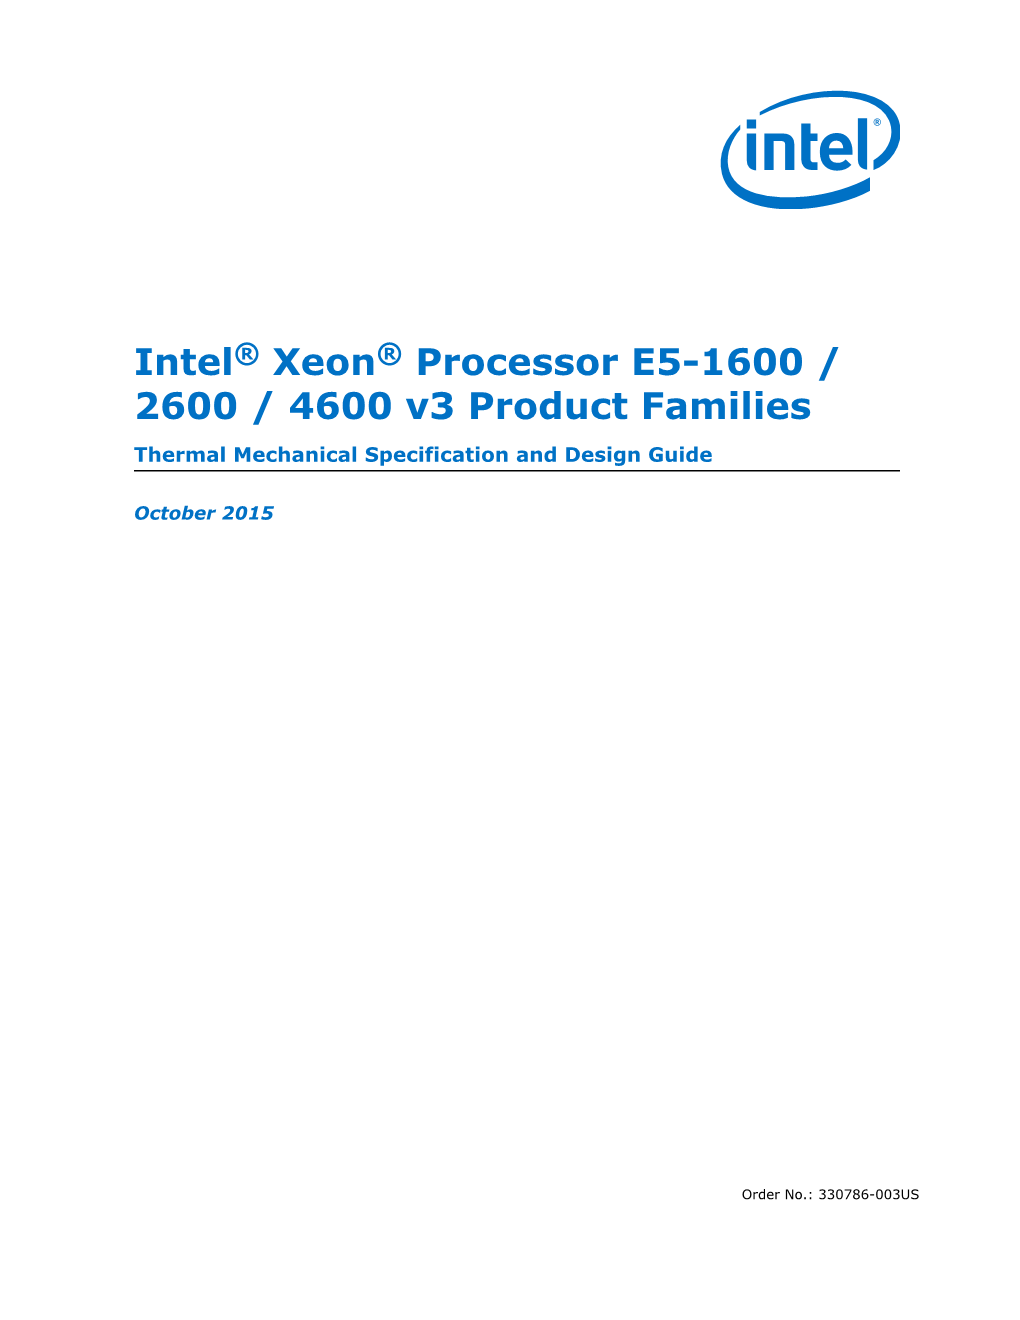 Intel® Xeon® Processor E5 V3 Family Thermal Guide